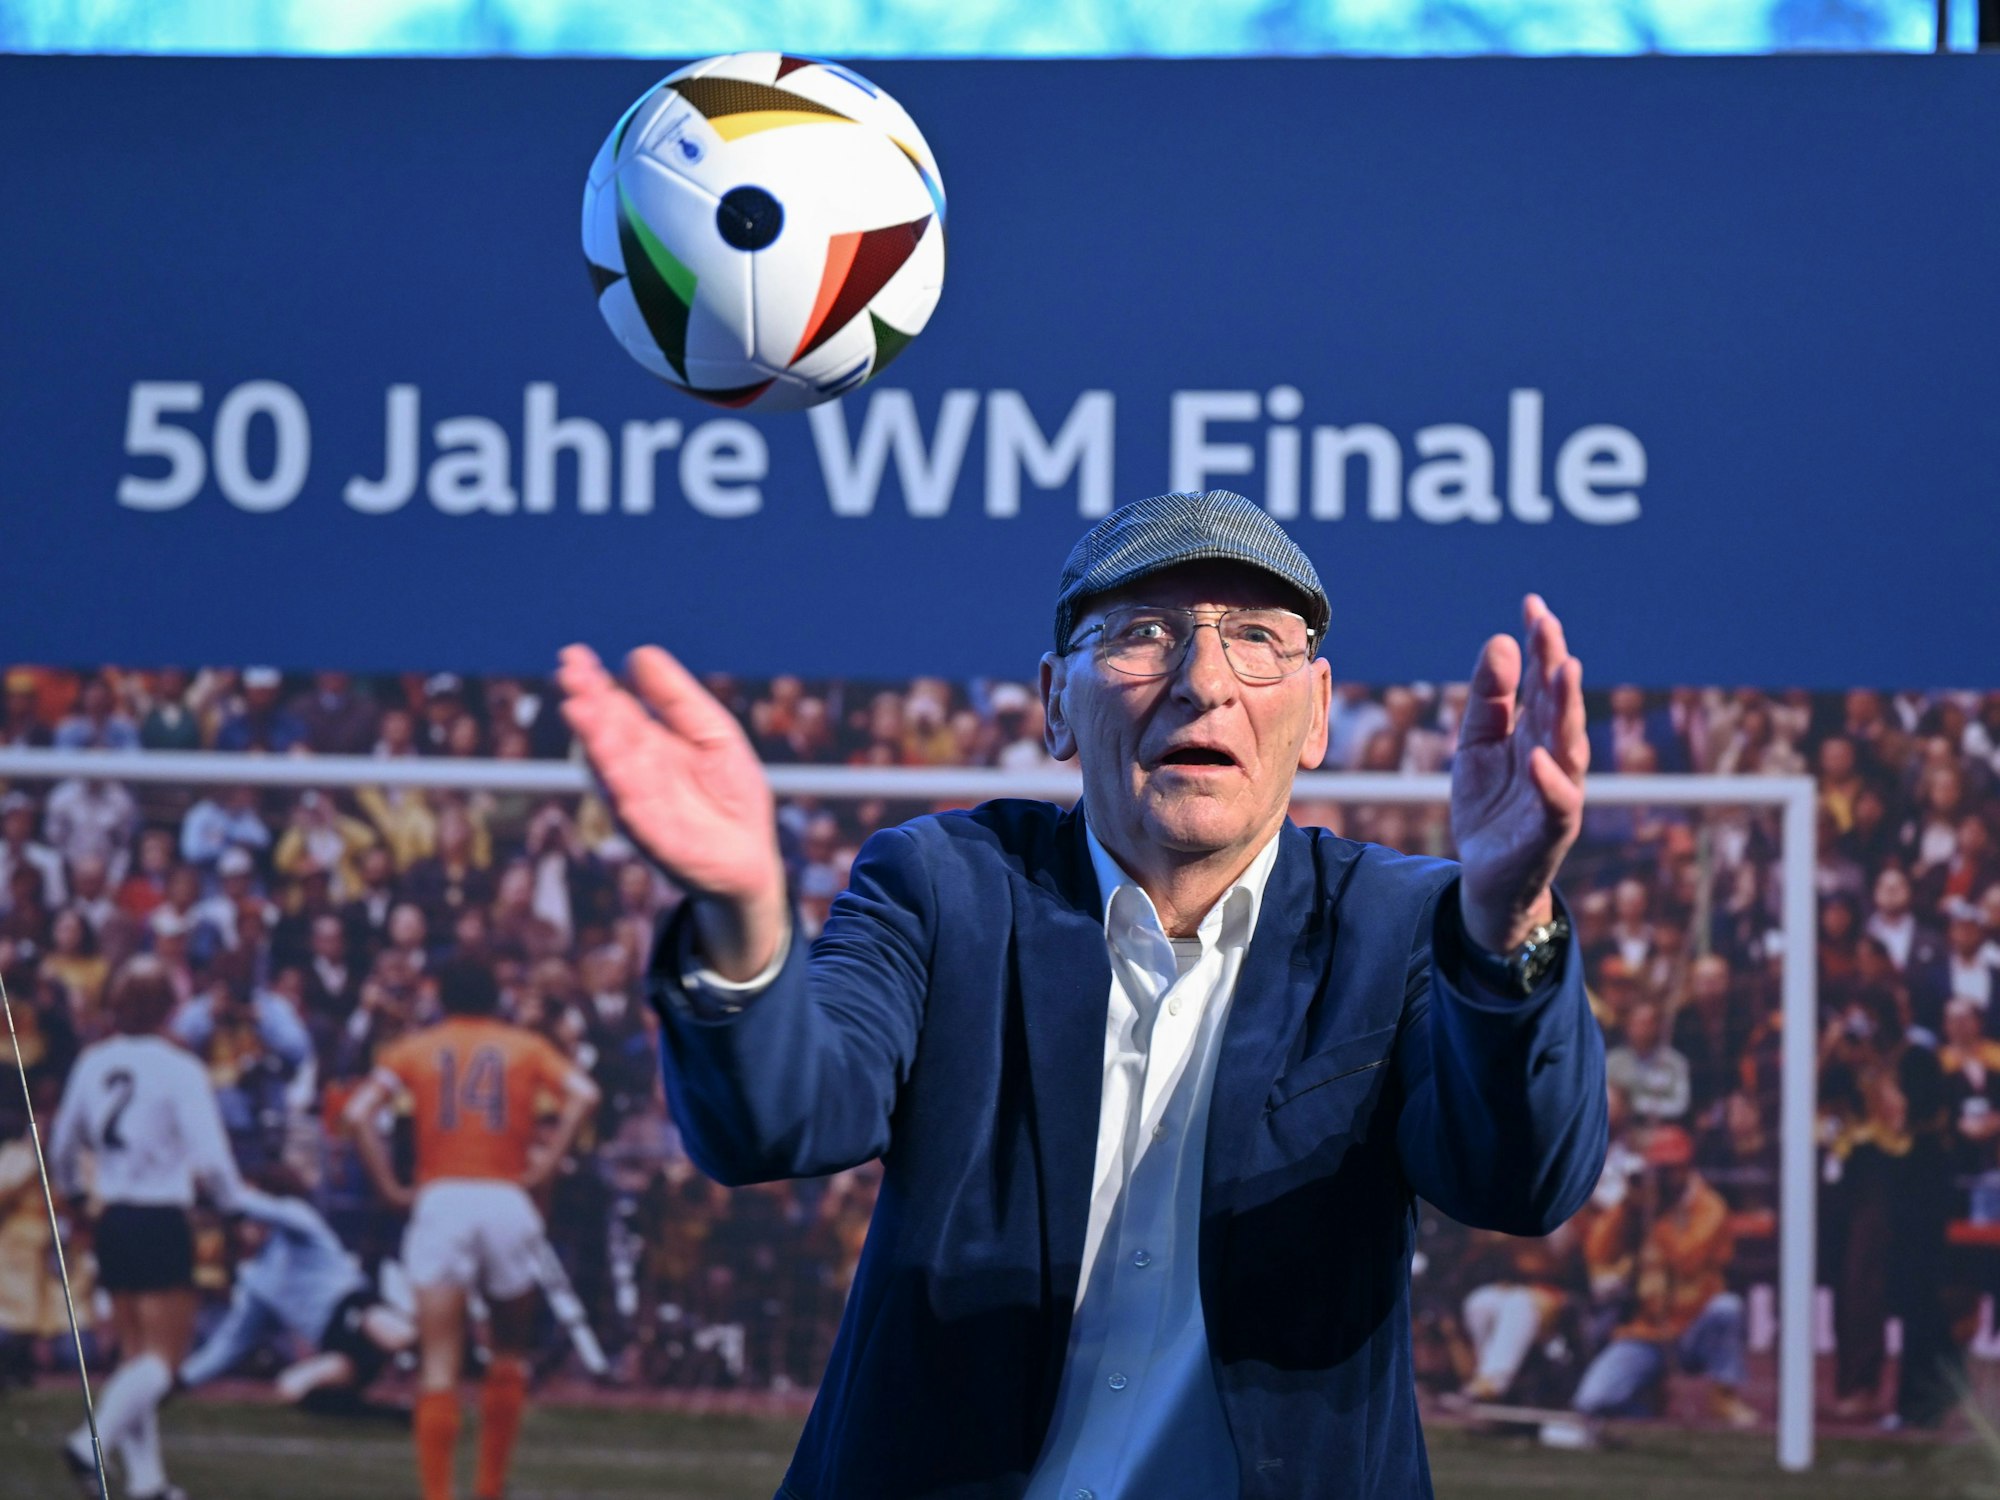 Der frühere Nationaltorwart Wolfgang Kleff, Weltmeister von 1974, nimmt am Rande des Länderspiels an einem Medientermin teil.